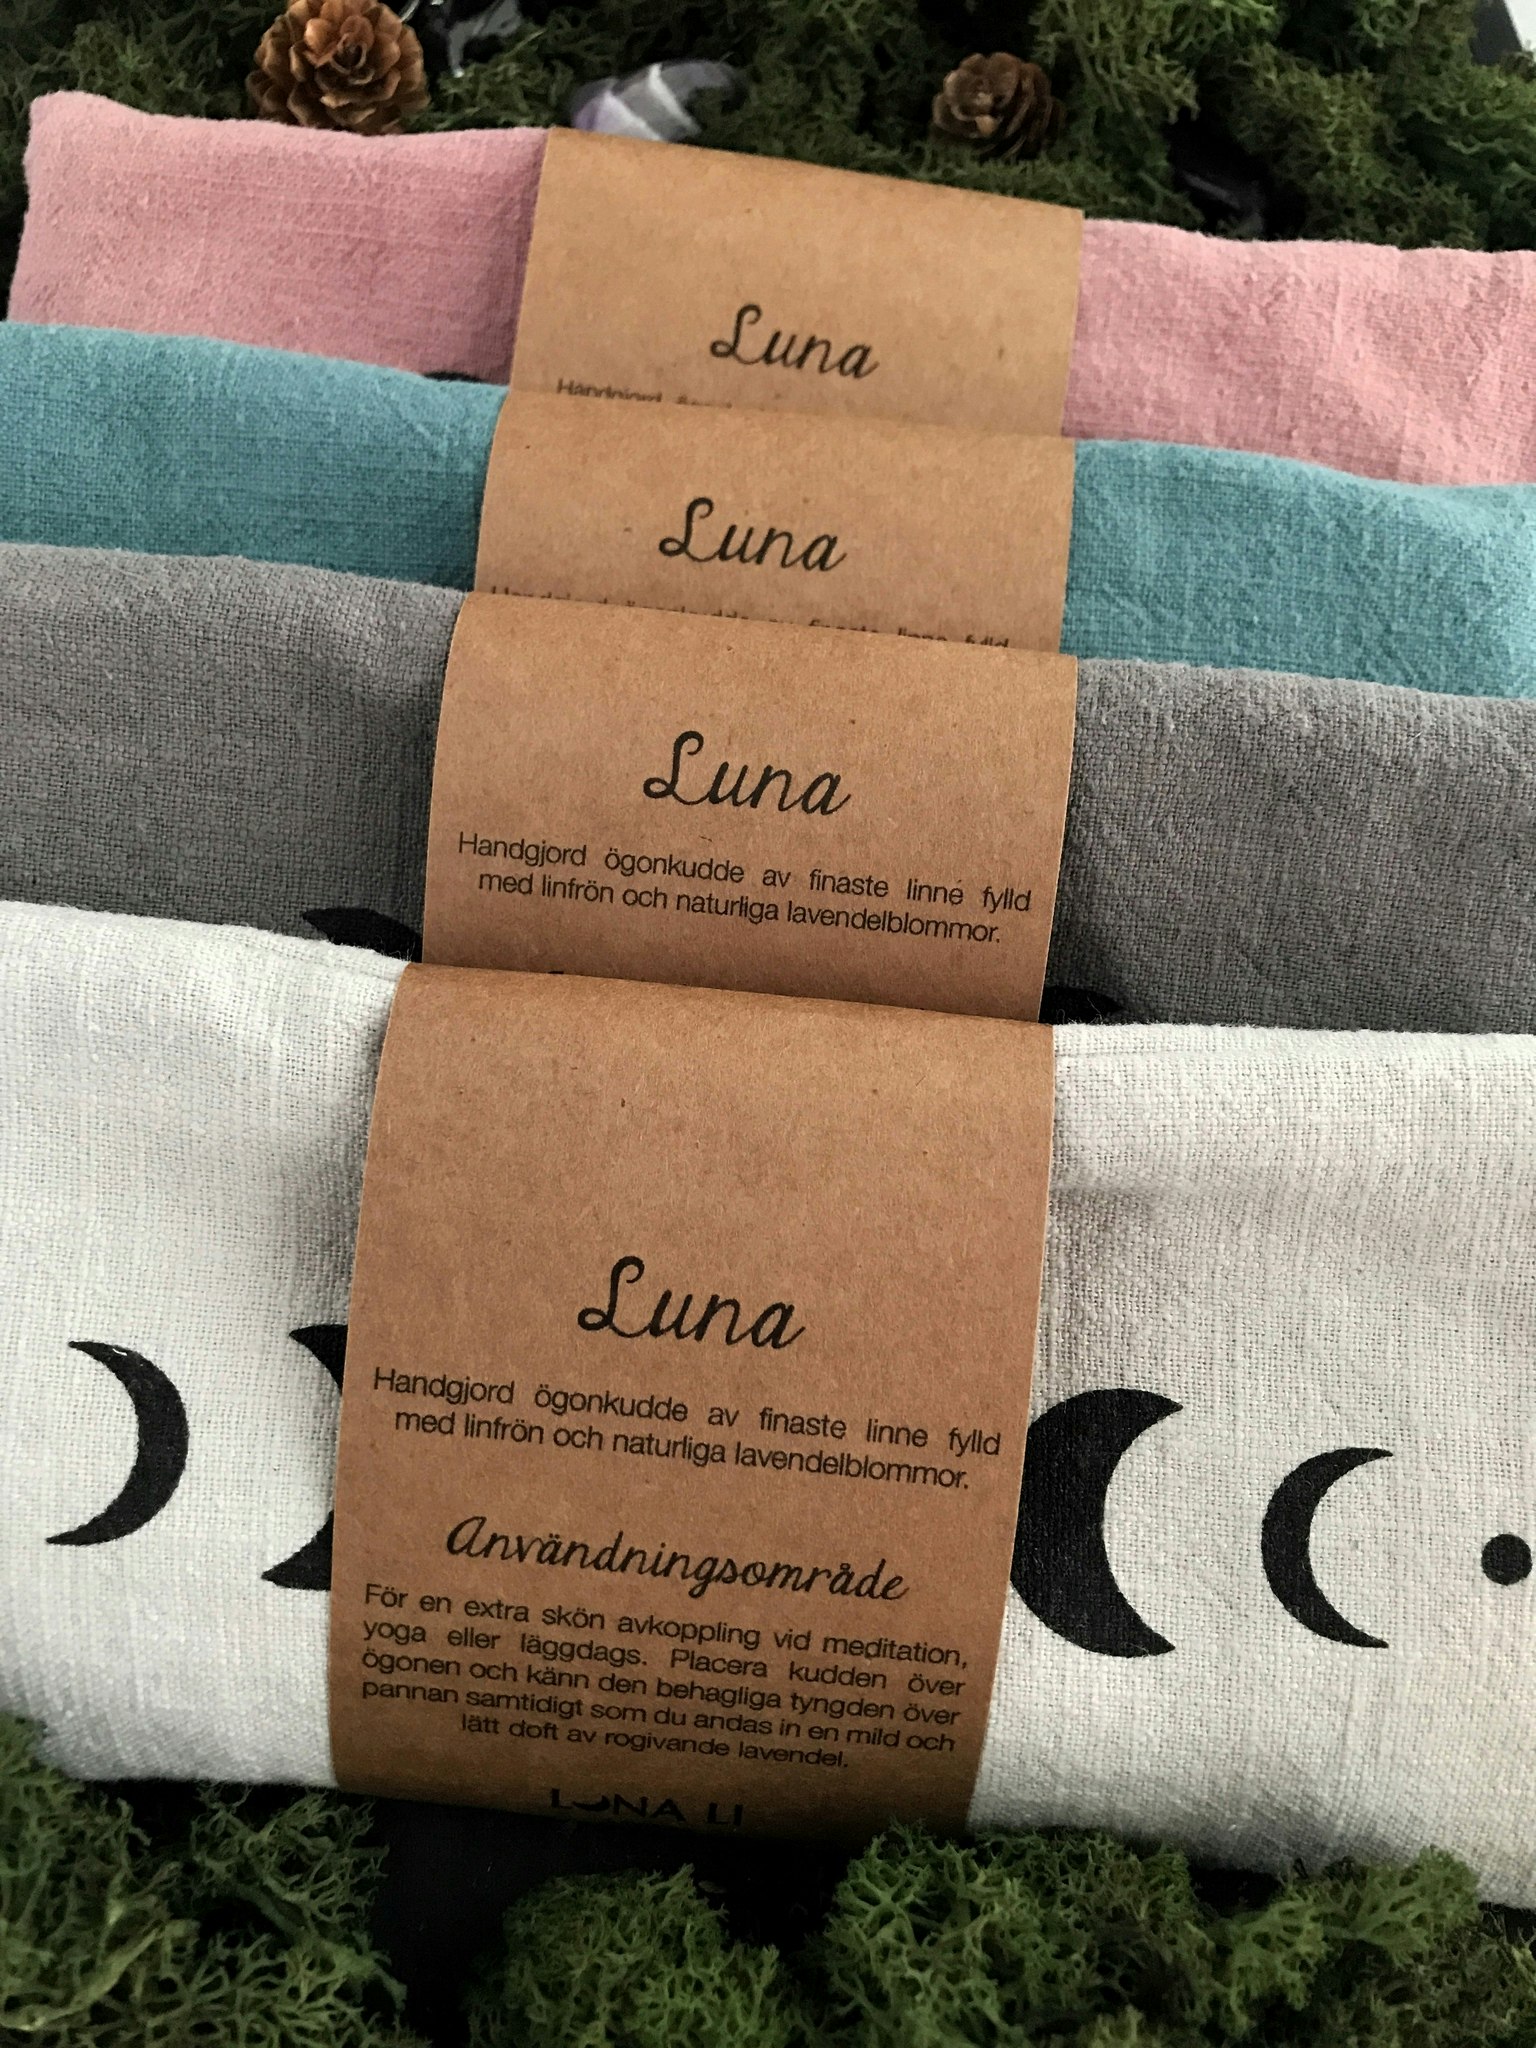 NYHET! Luna ögonkudde med lavendel, senapsgul